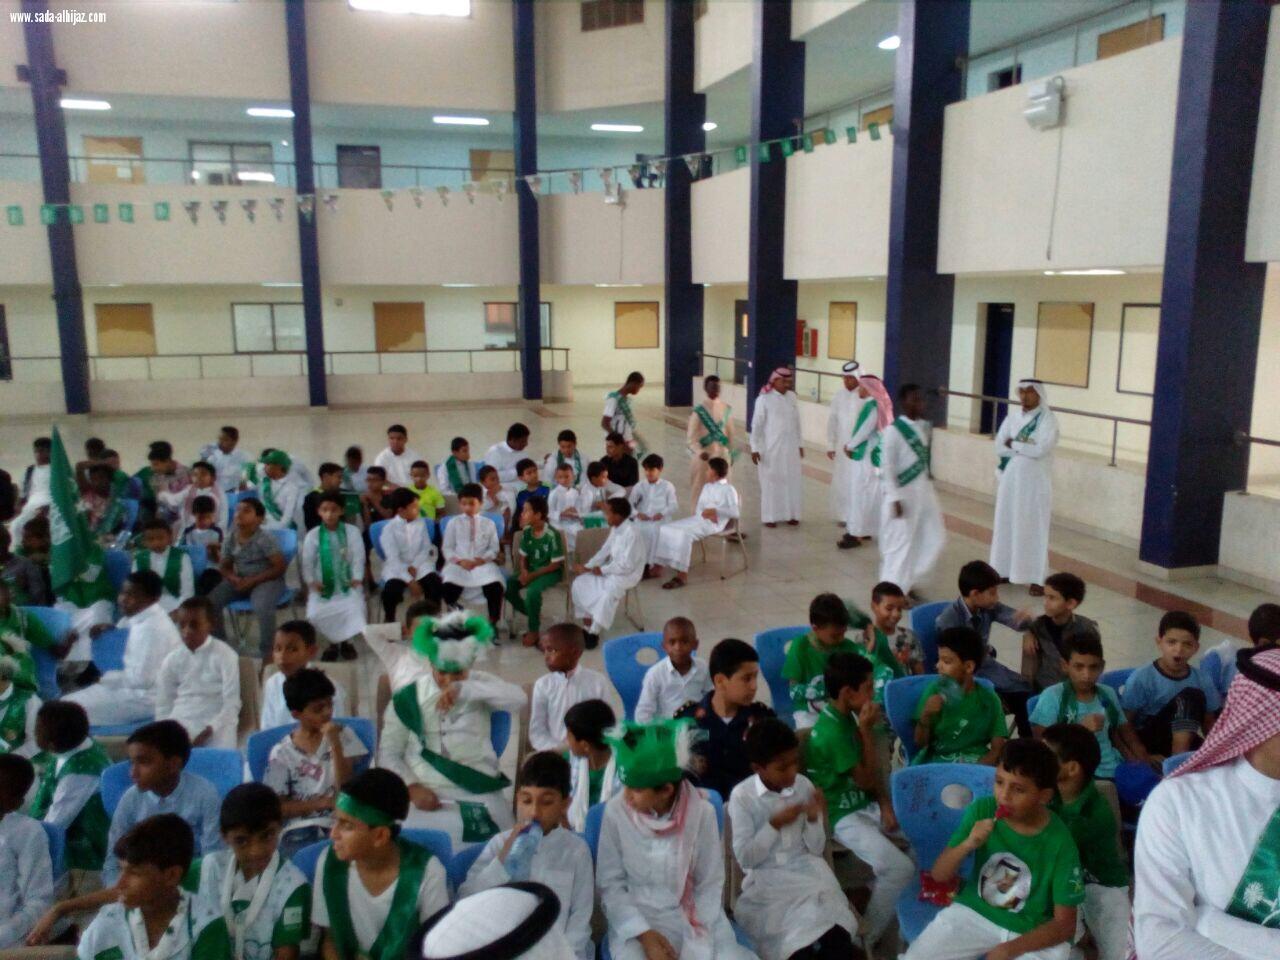 مستشفى الامير سلمان بن محمد بالدلم  يقيم فعالية (تحسبونه بس نسيان) في اليوم العالمي للزهايمر